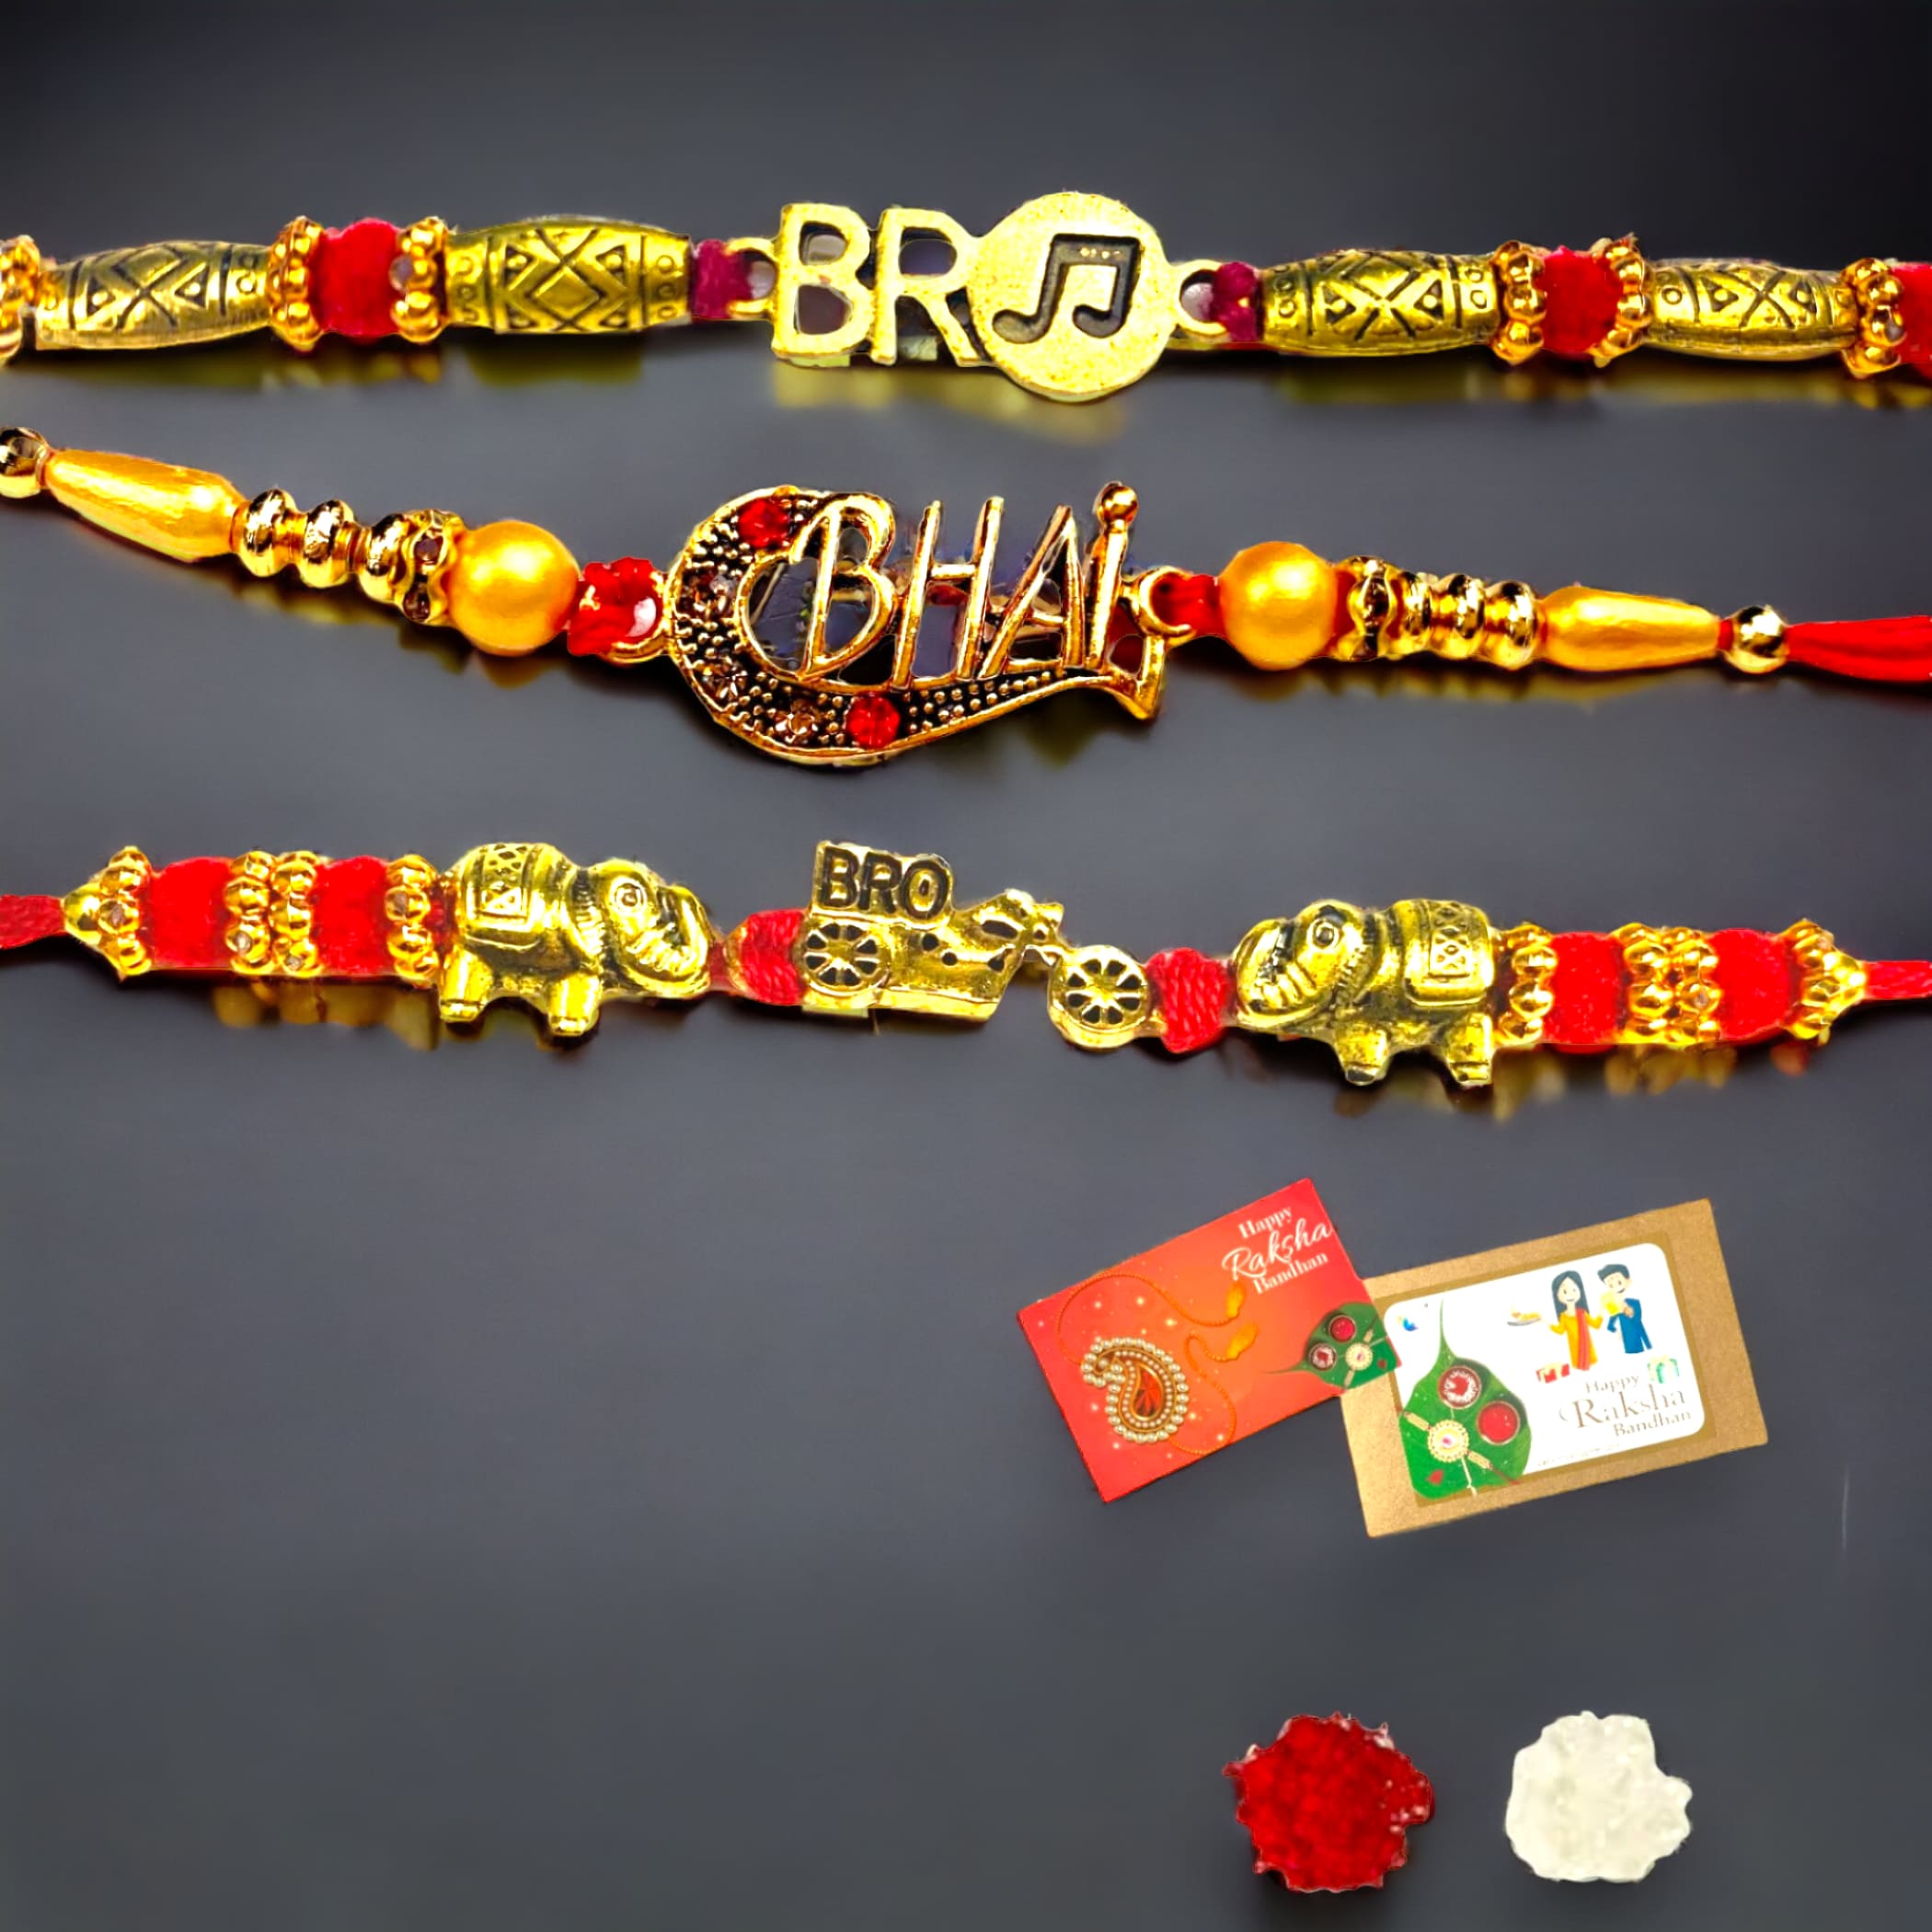 2 bro designer rakhi for brother gift hamper bhai